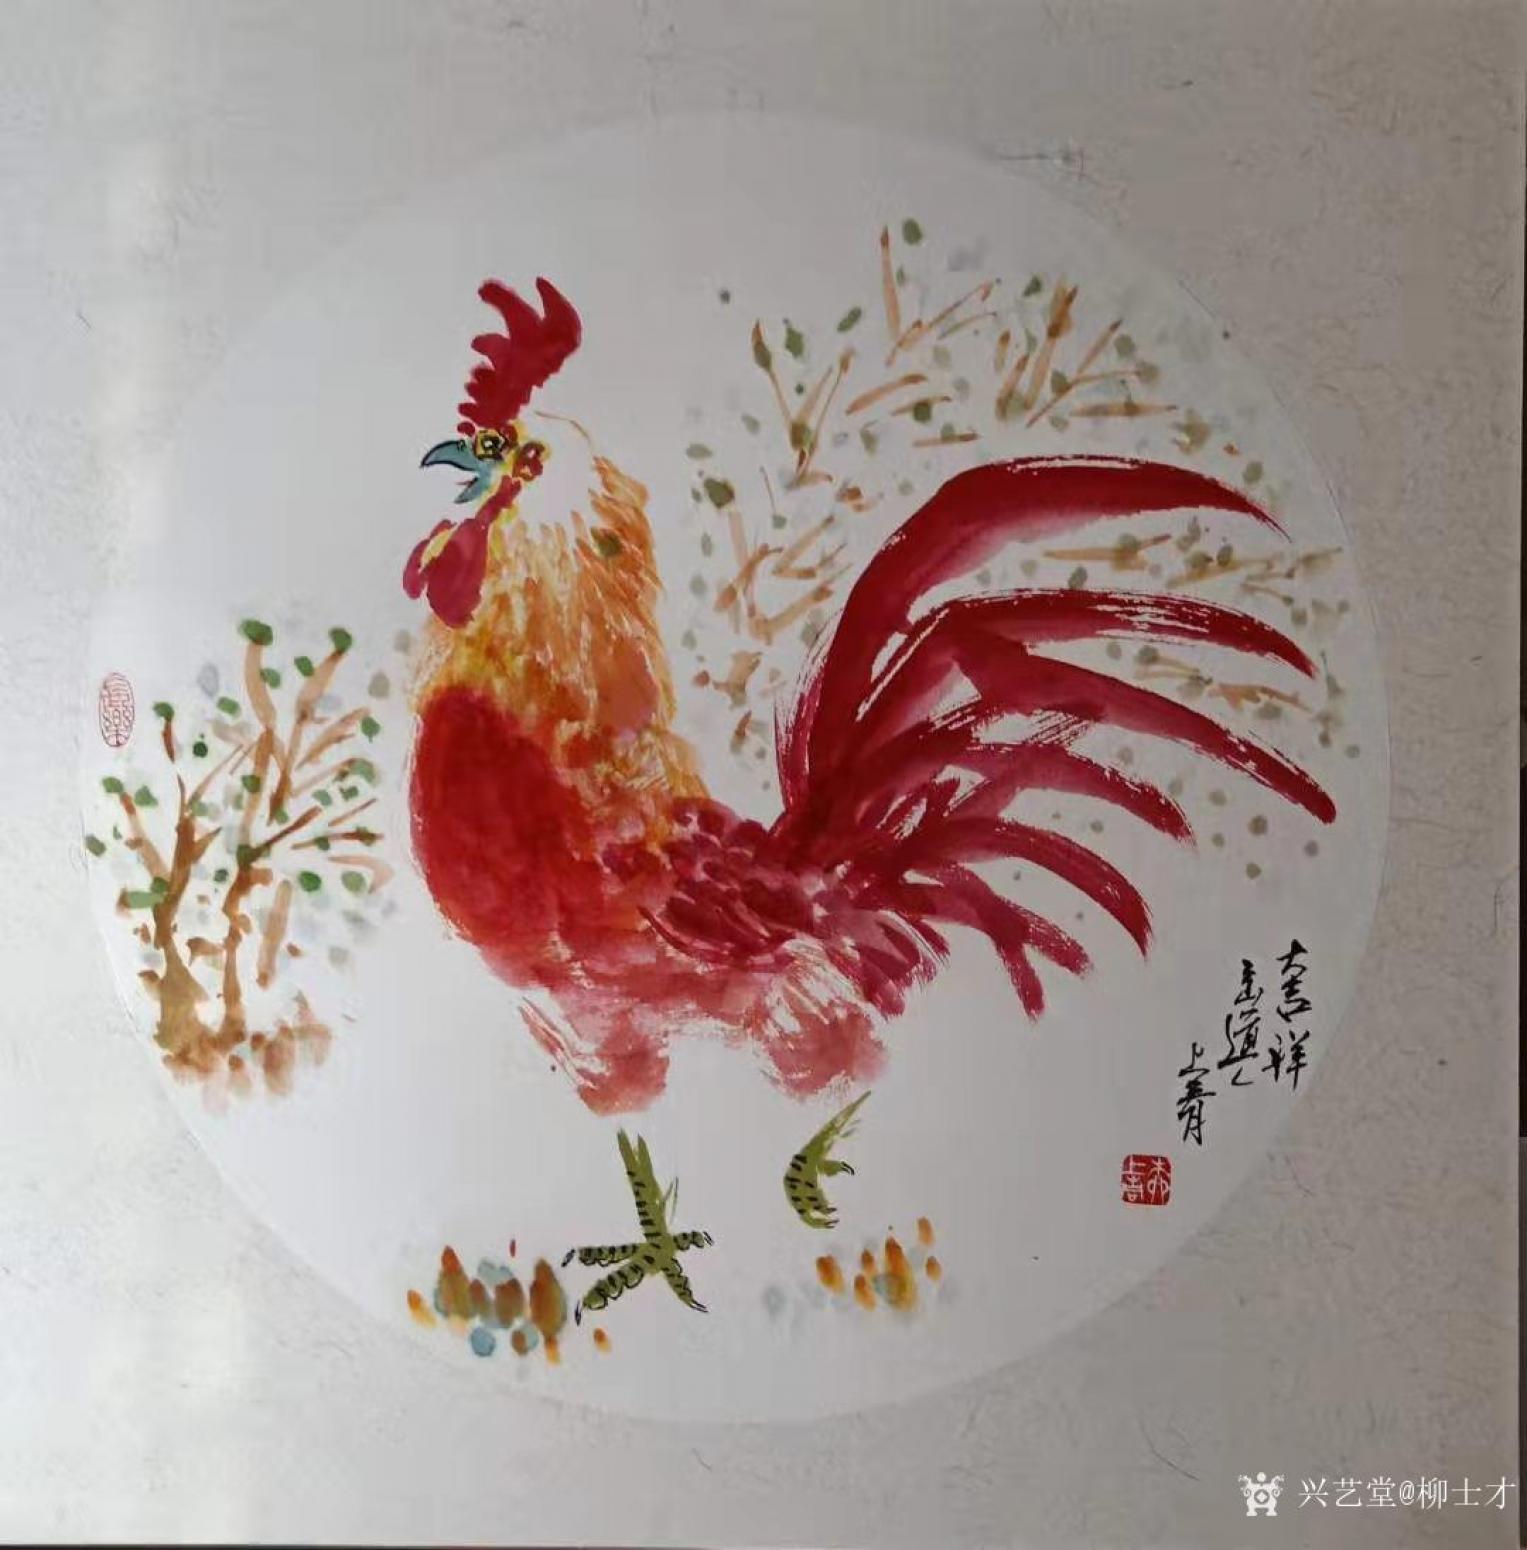 柳士才国画作品《大红公鸡-大吉祥》